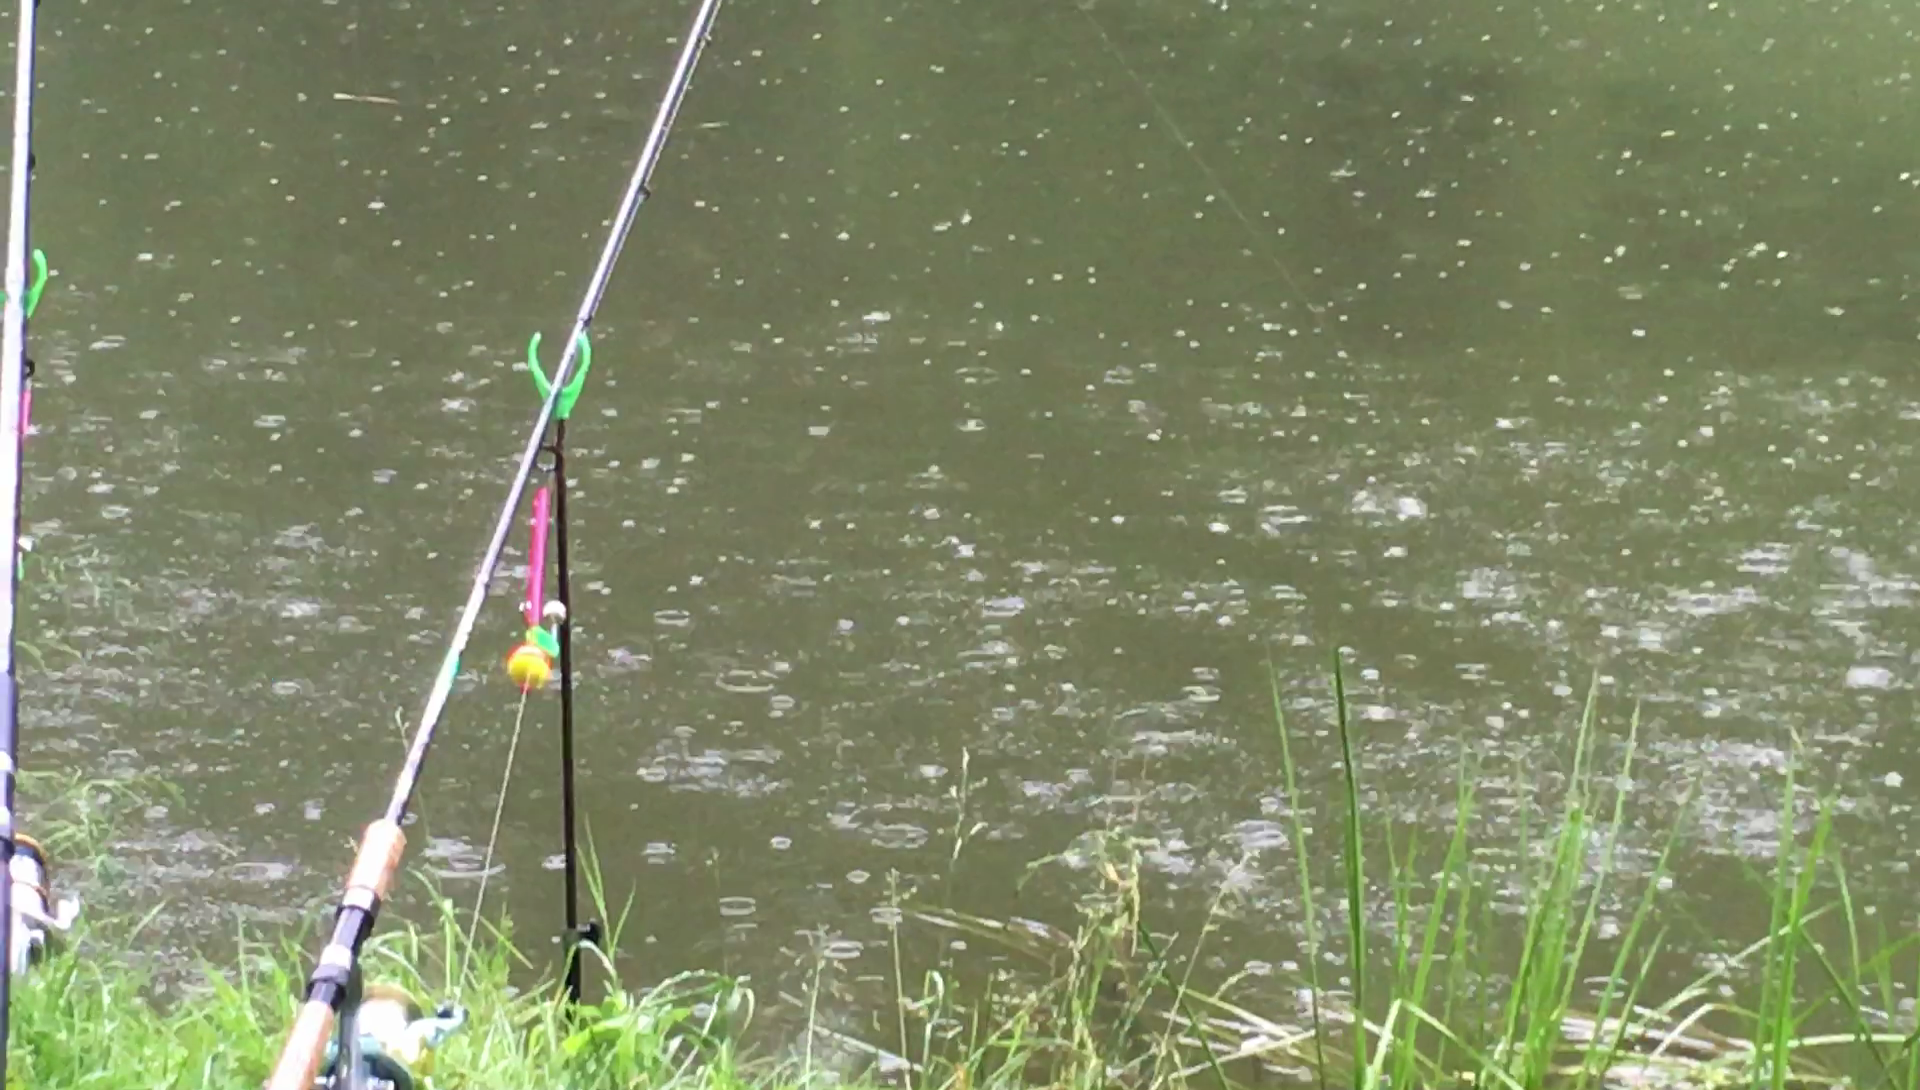 Мокрая рыбалка в дождь или несколько советов о времяпровождении на водоёме.